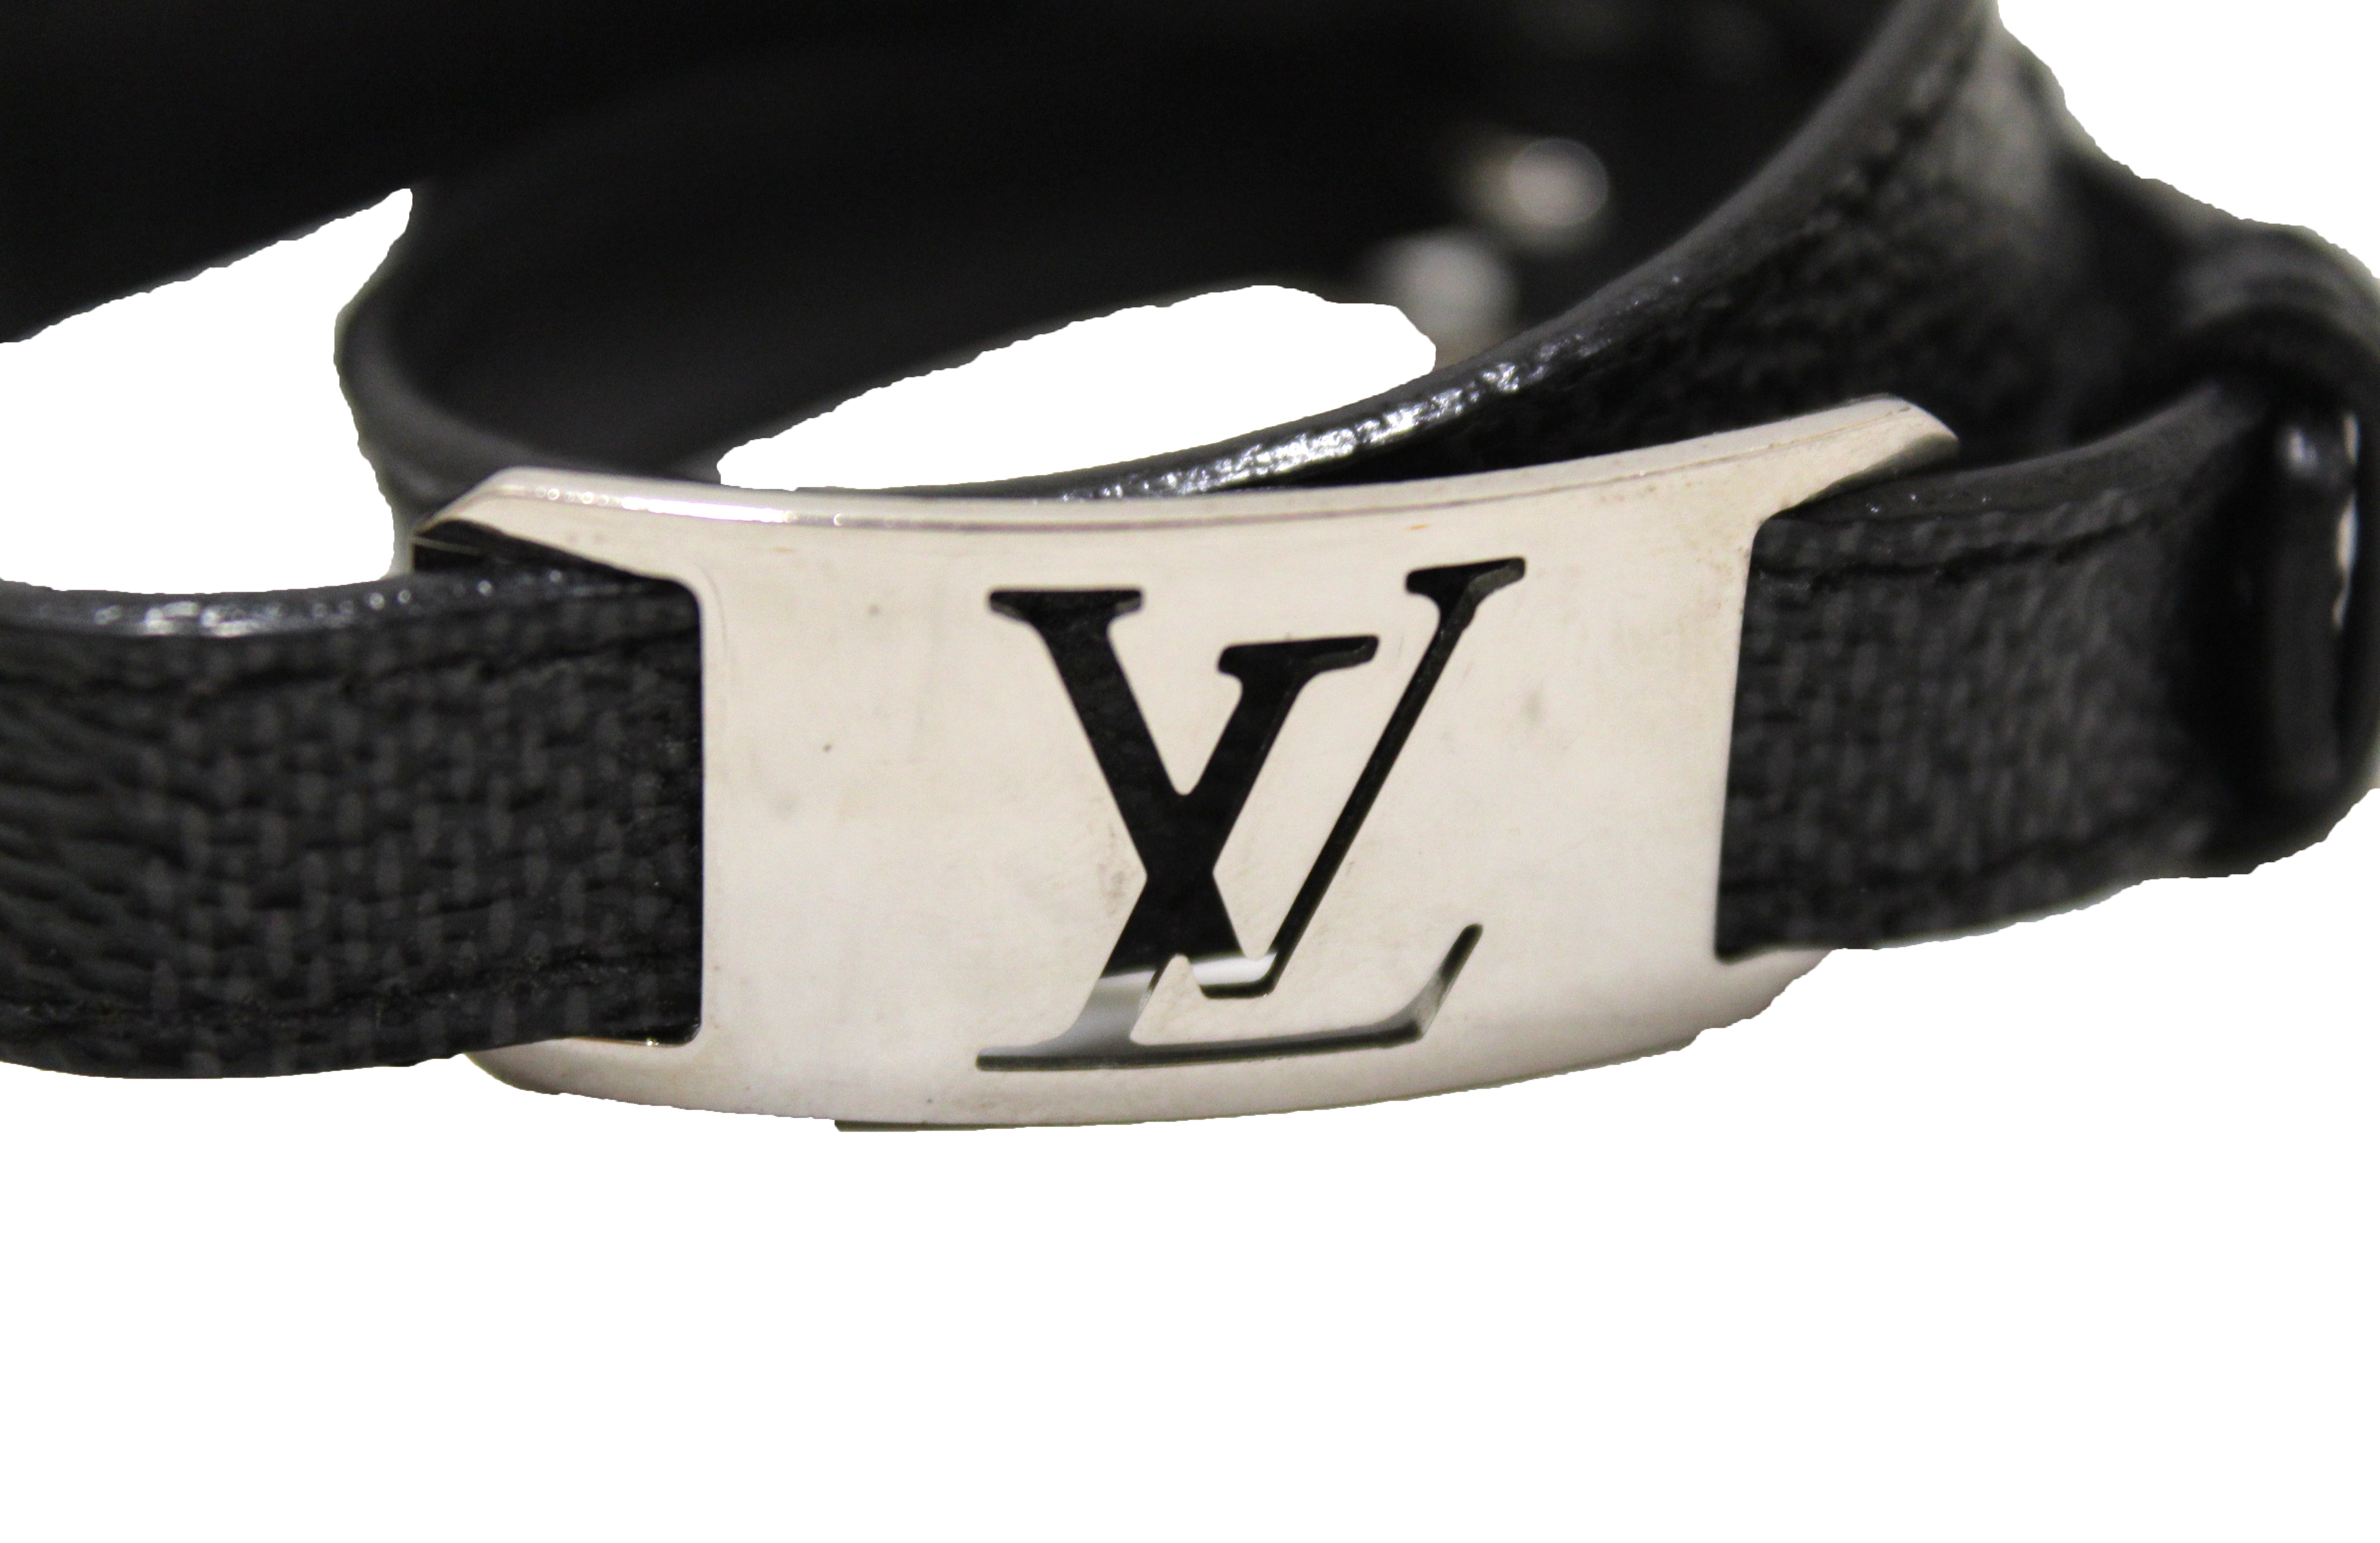 Louis Vuitton Digit Bracelet Graphite Damier Canvas. Size 19